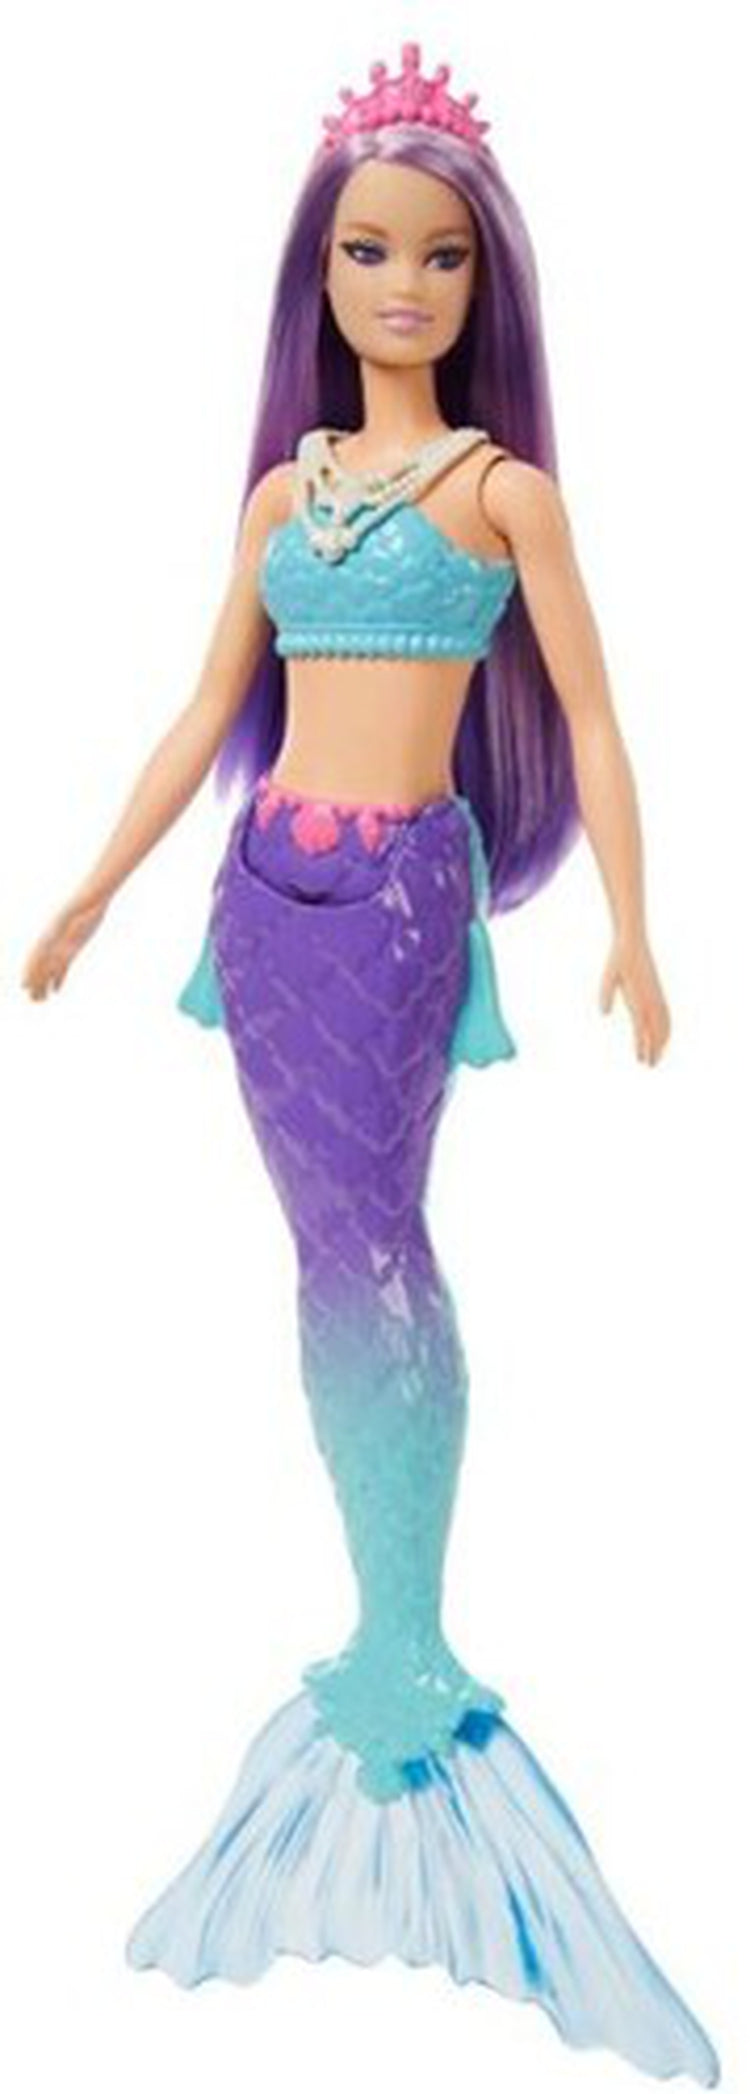 Mattel - Barbie Dreamtopia Mermaid with Blue Top, Purple Hair